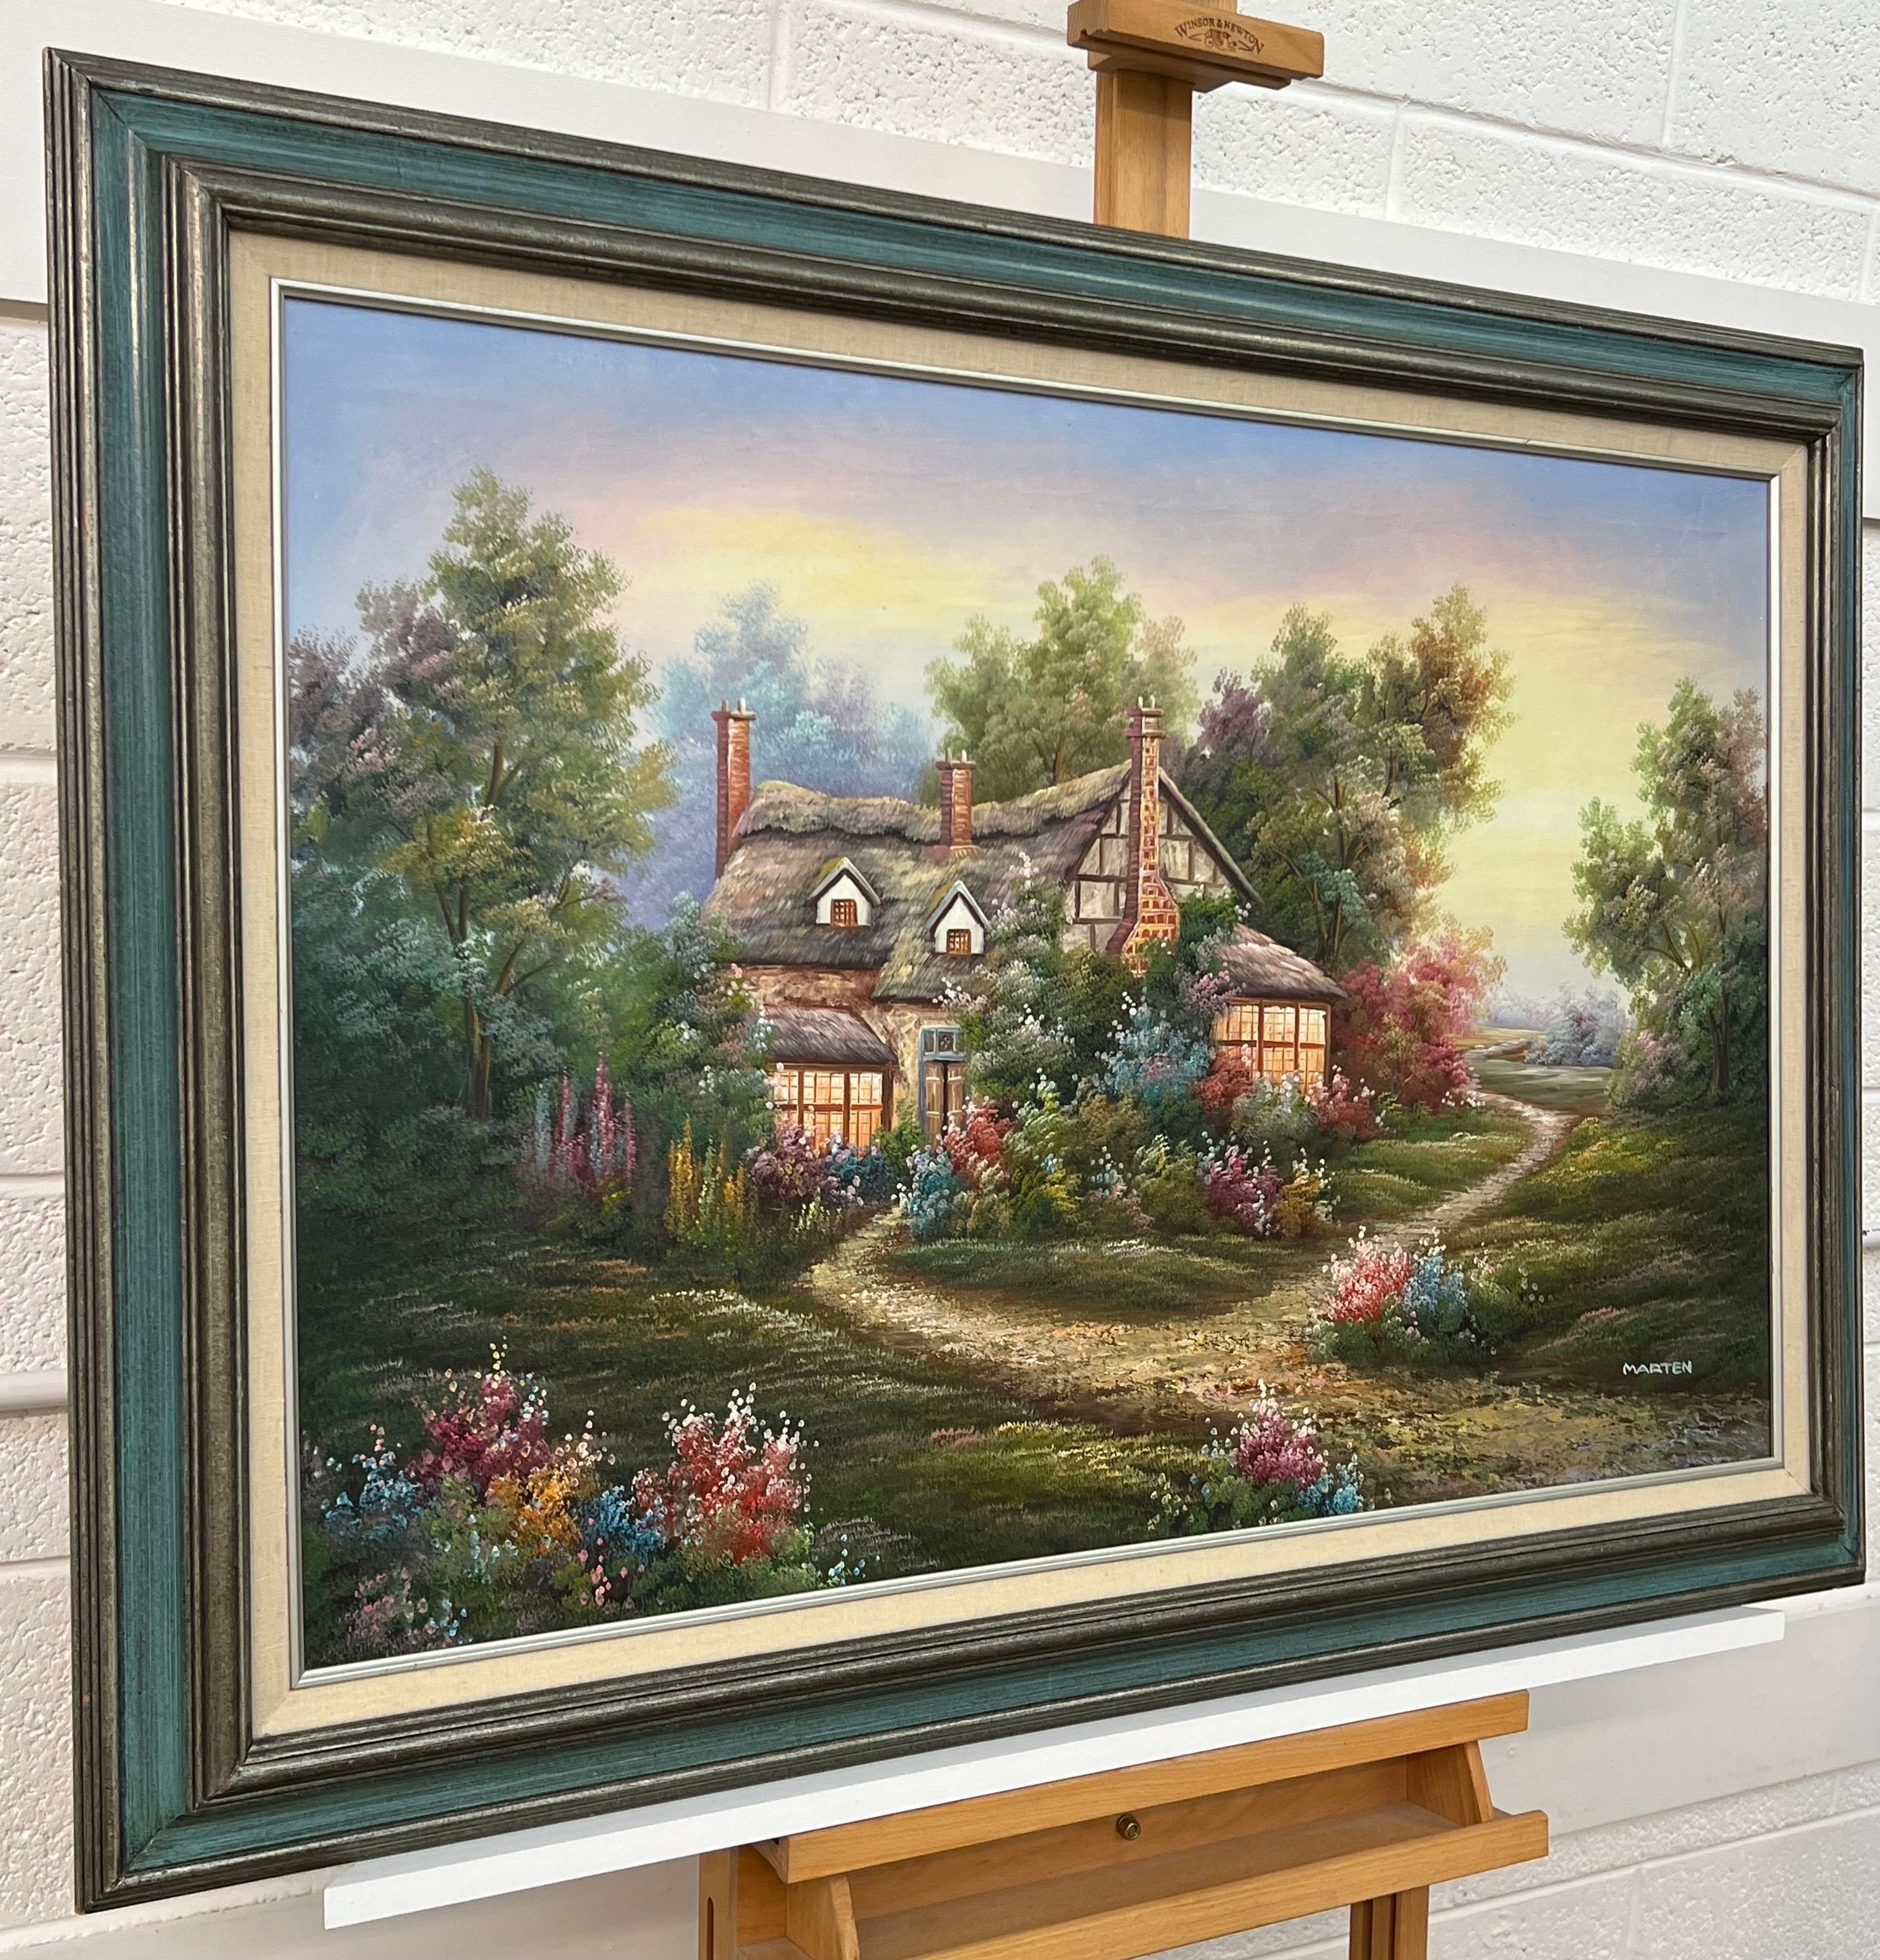 Vintage Ölgemälde von Fantasy Cottage in den Wäldern mit Blumen & Gärten – Painting von Marten